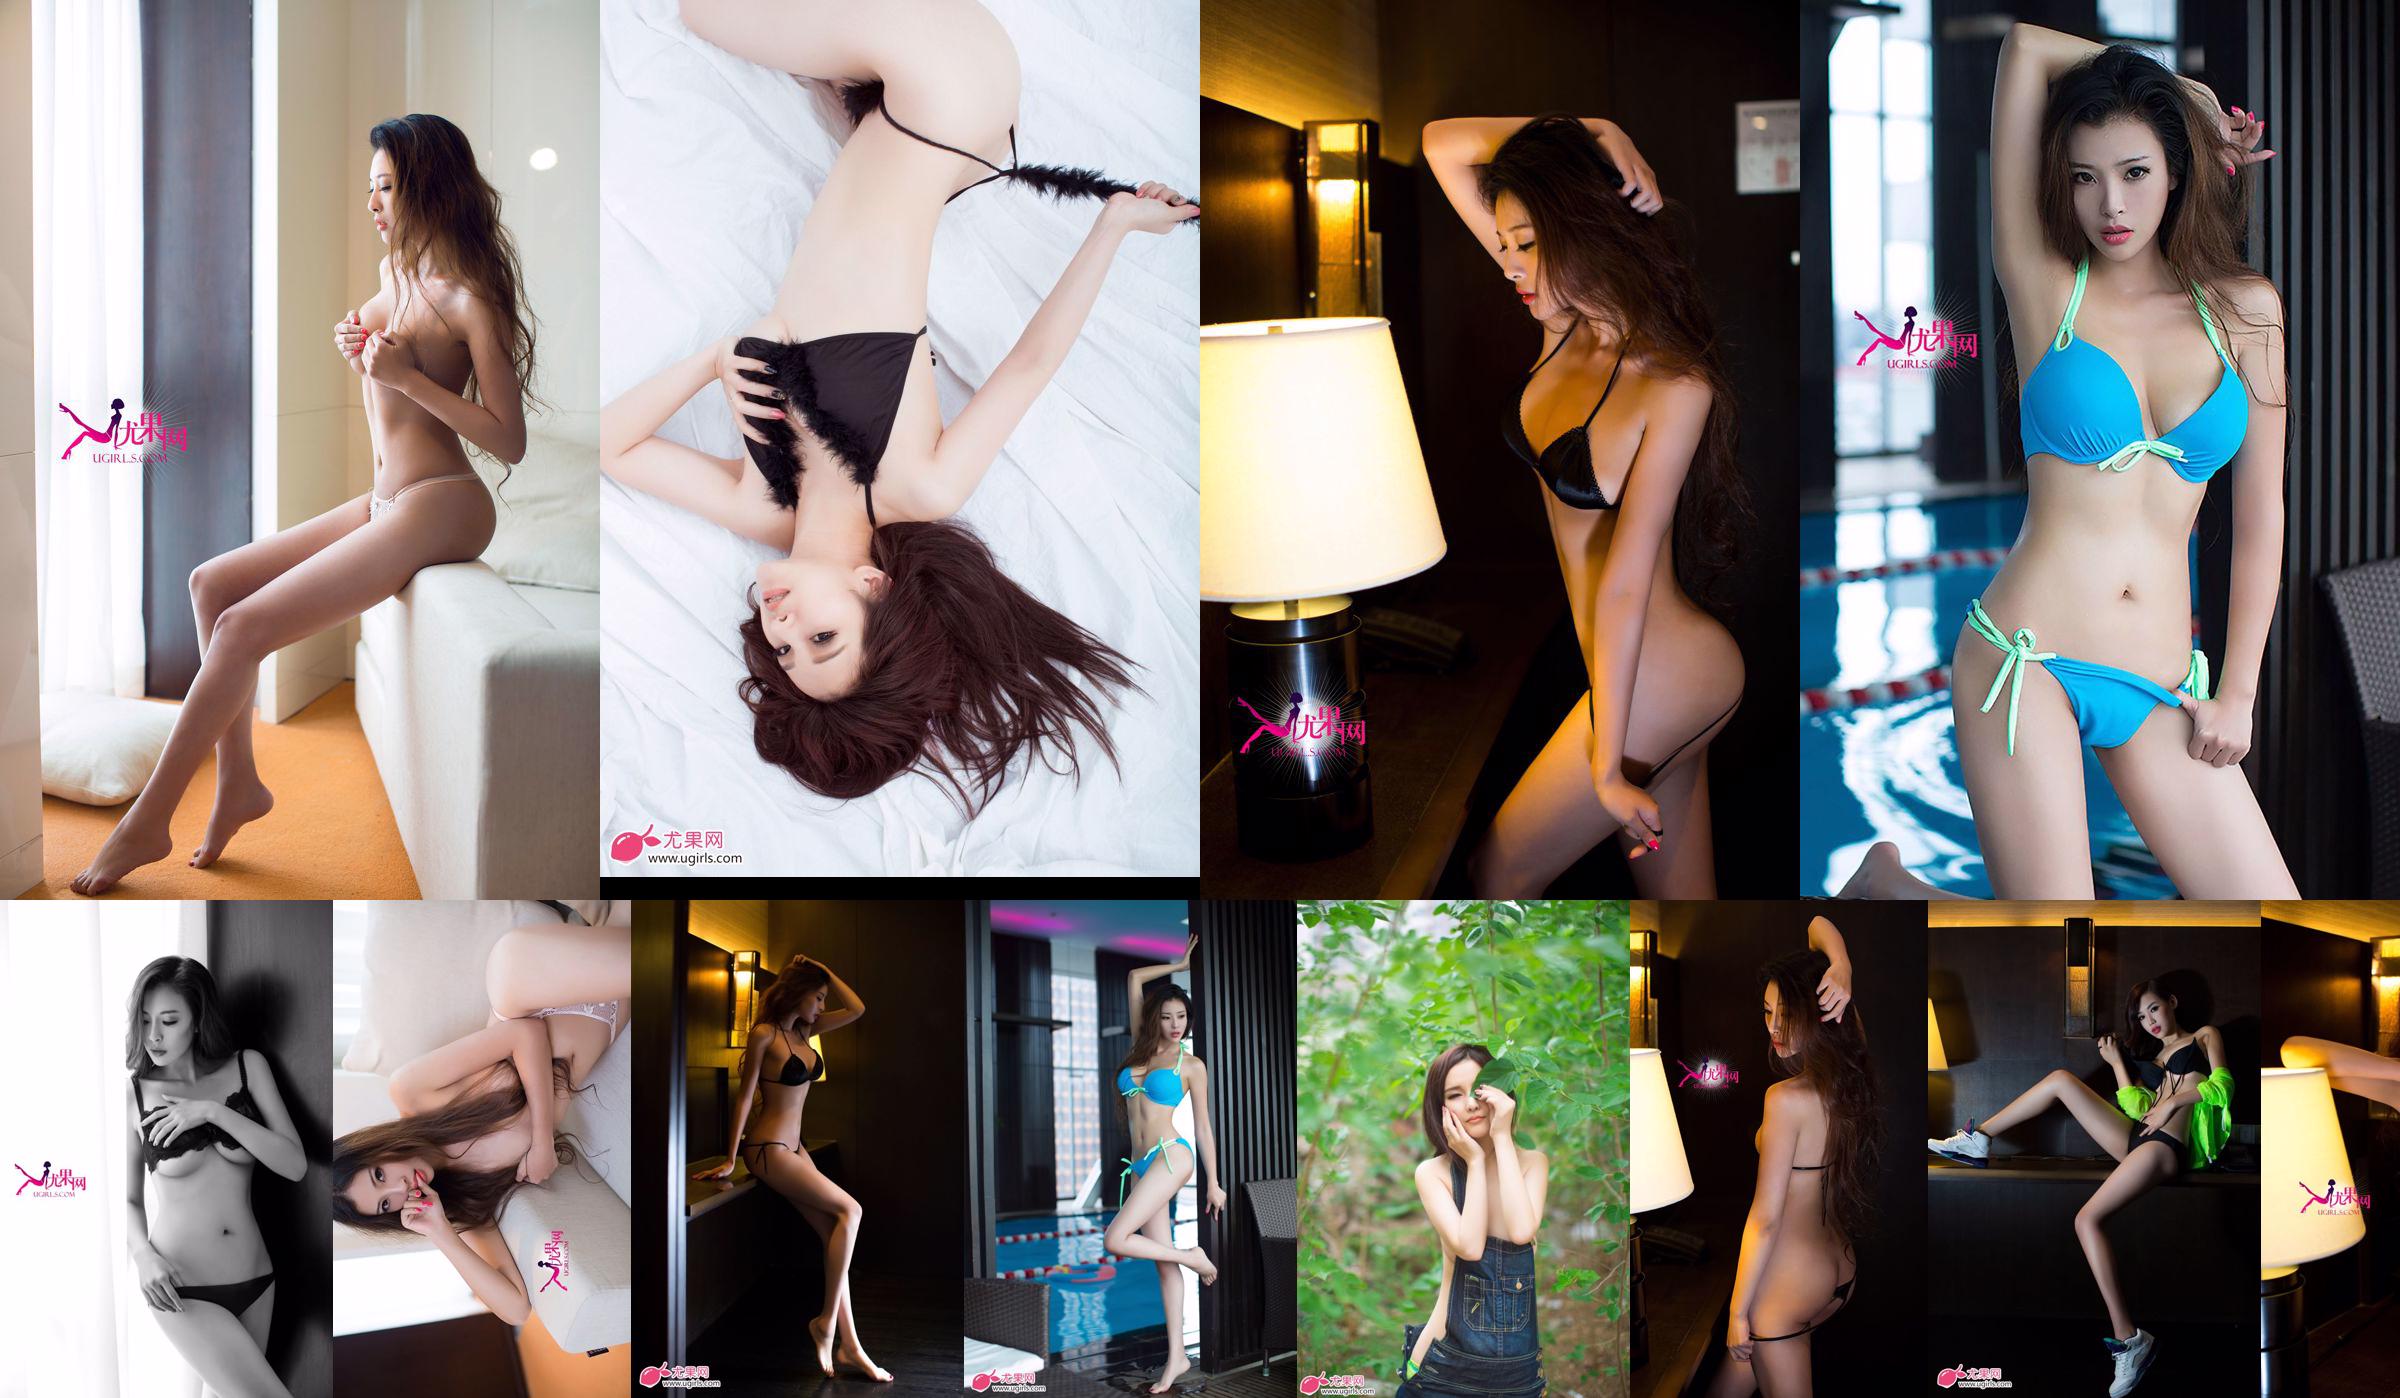 [Ugirls] E043 Langbeiniges Model Zeng Chen "Summer Sexy" No.5b672e Seite 16